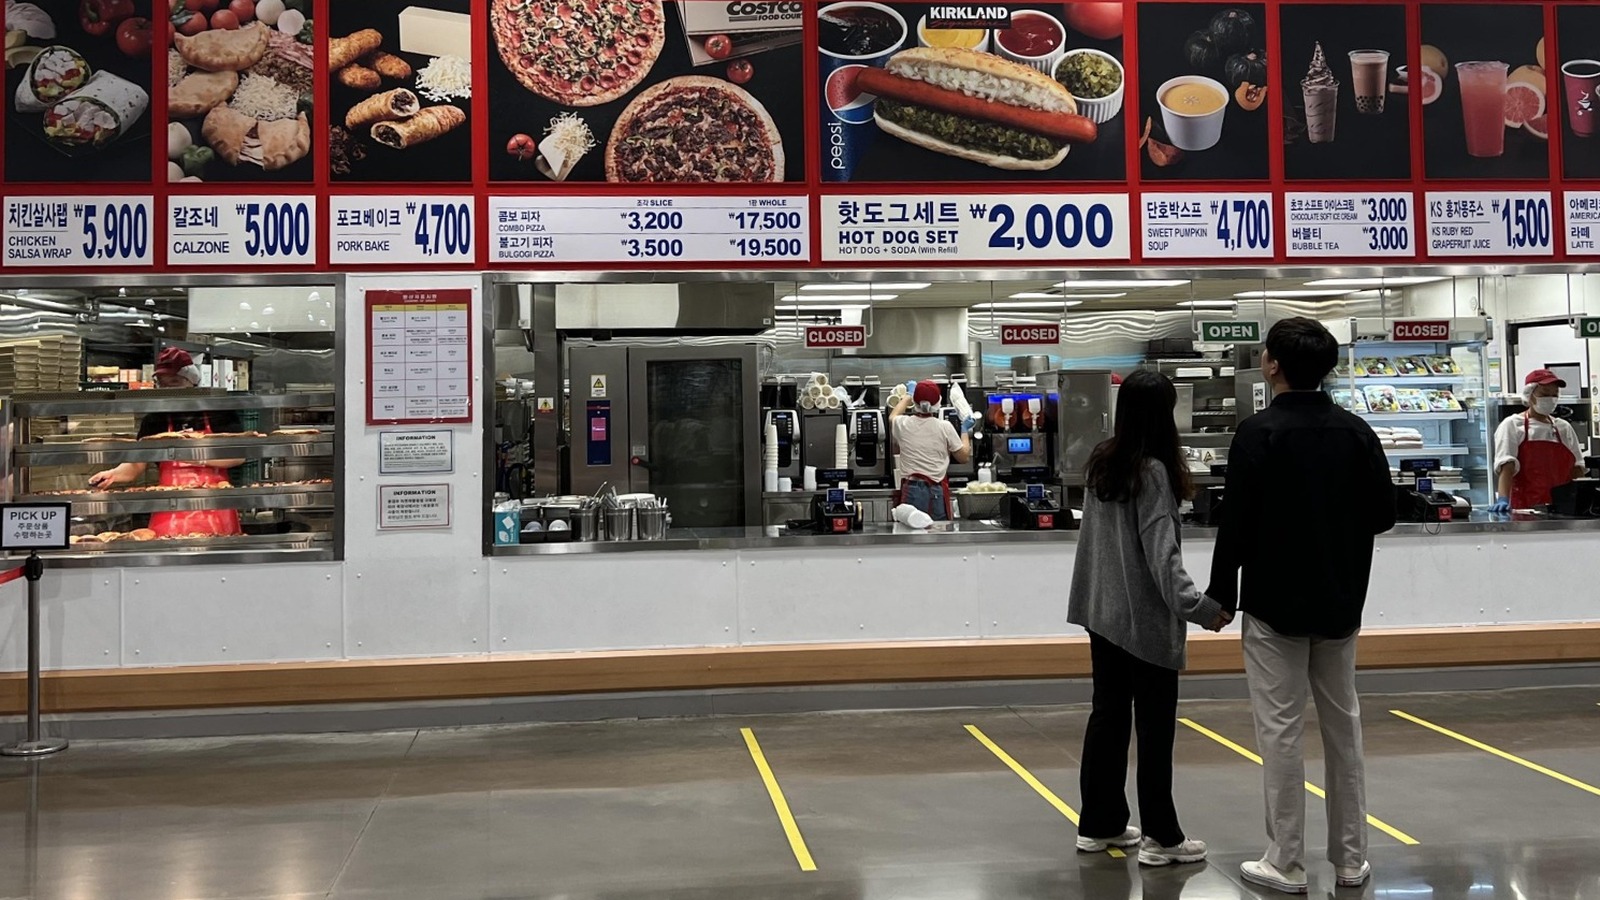 هذا ما تبدو عليه قائمة قاعة الطعام في كوستكو في كوريا